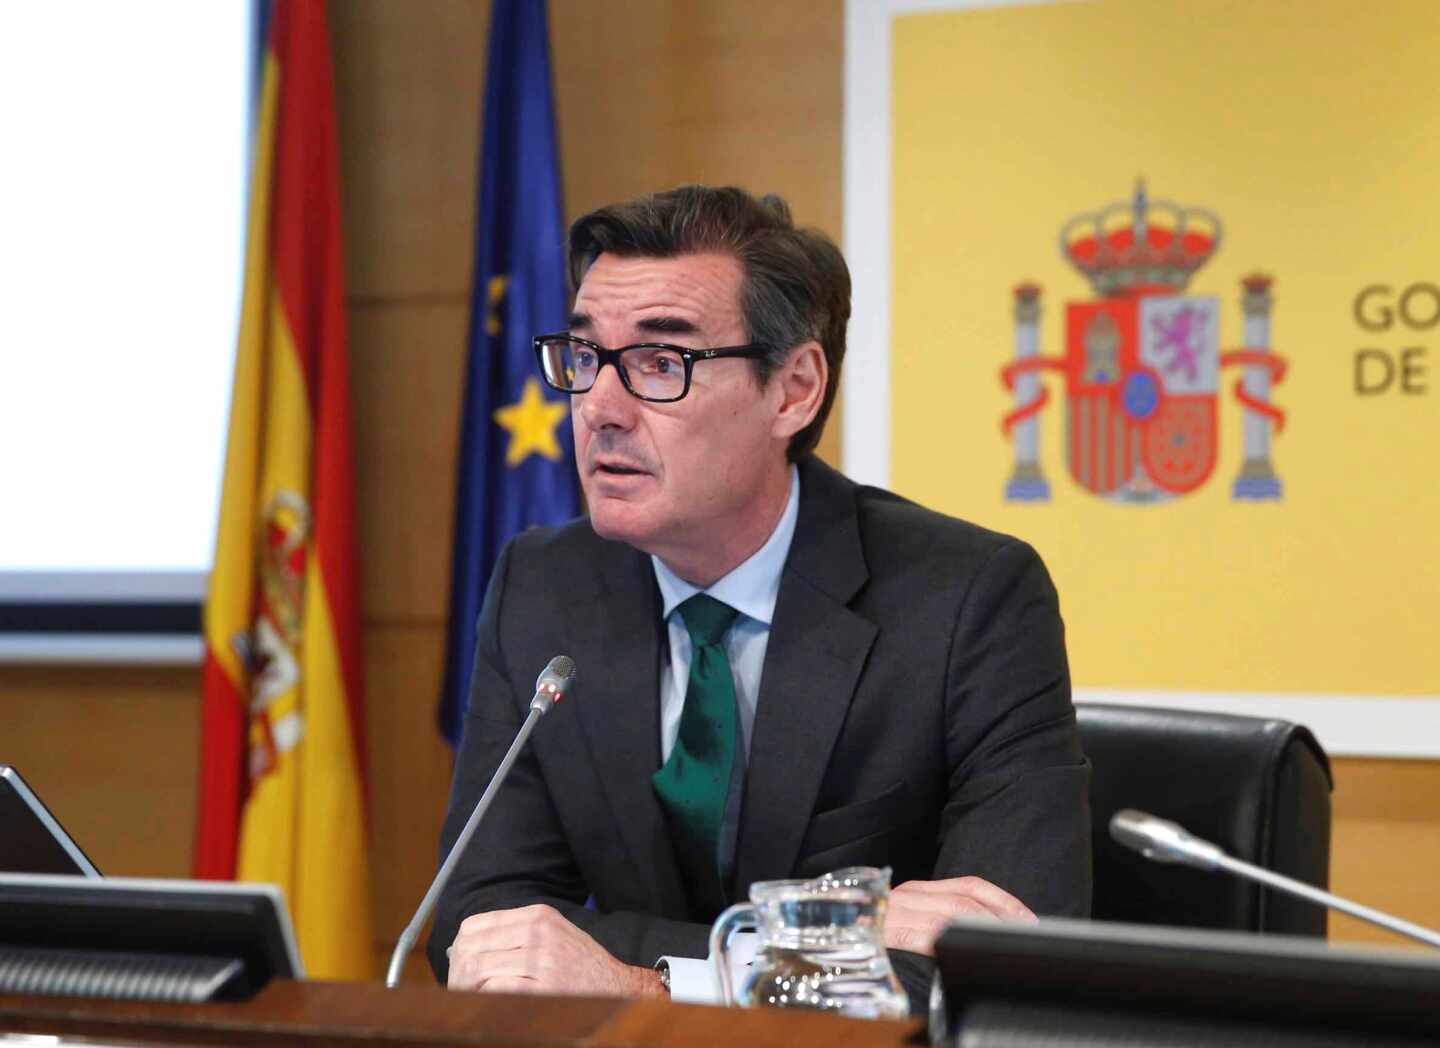 España emitirá deuda por 100.000 millones este año, un 9% menos que en 2020